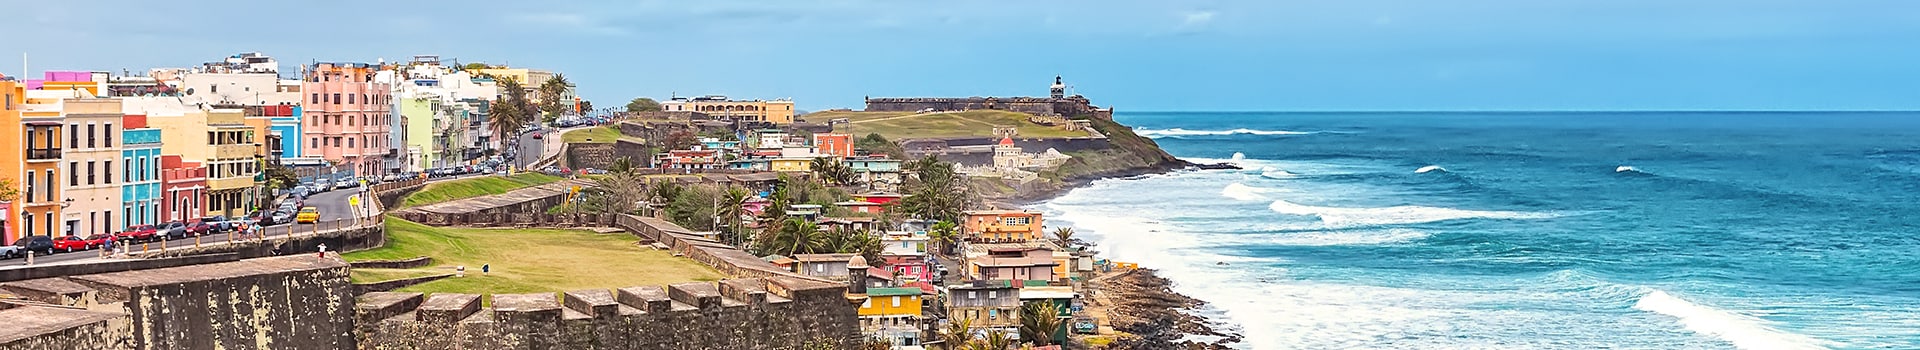 Santo Domingo - Puerto rico sju